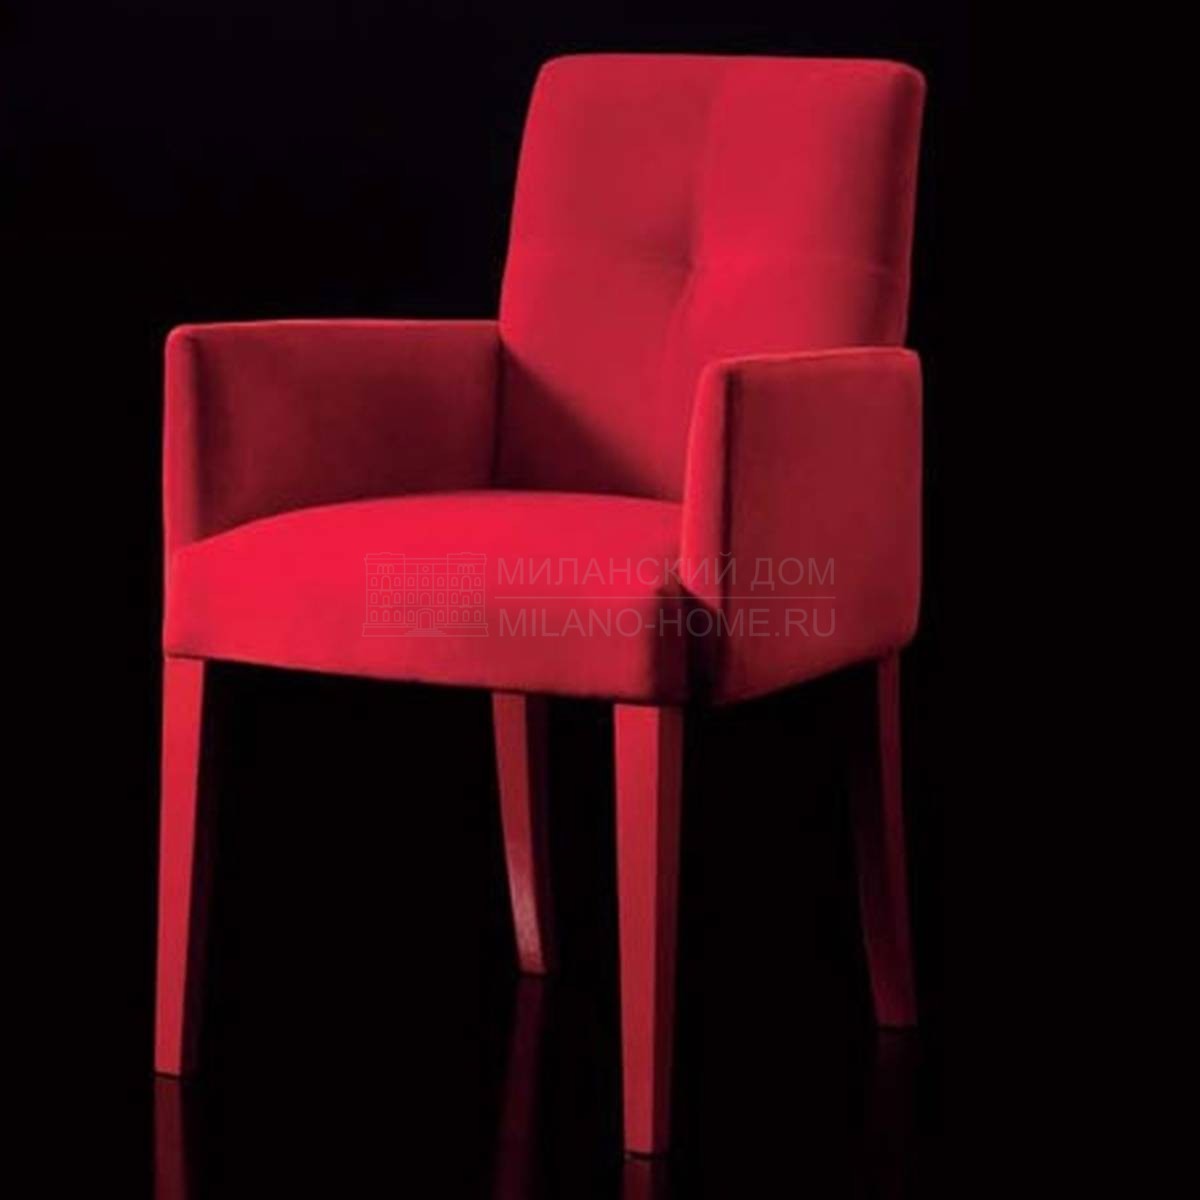 Кресло SO502 из Италии фабрики MALERBA